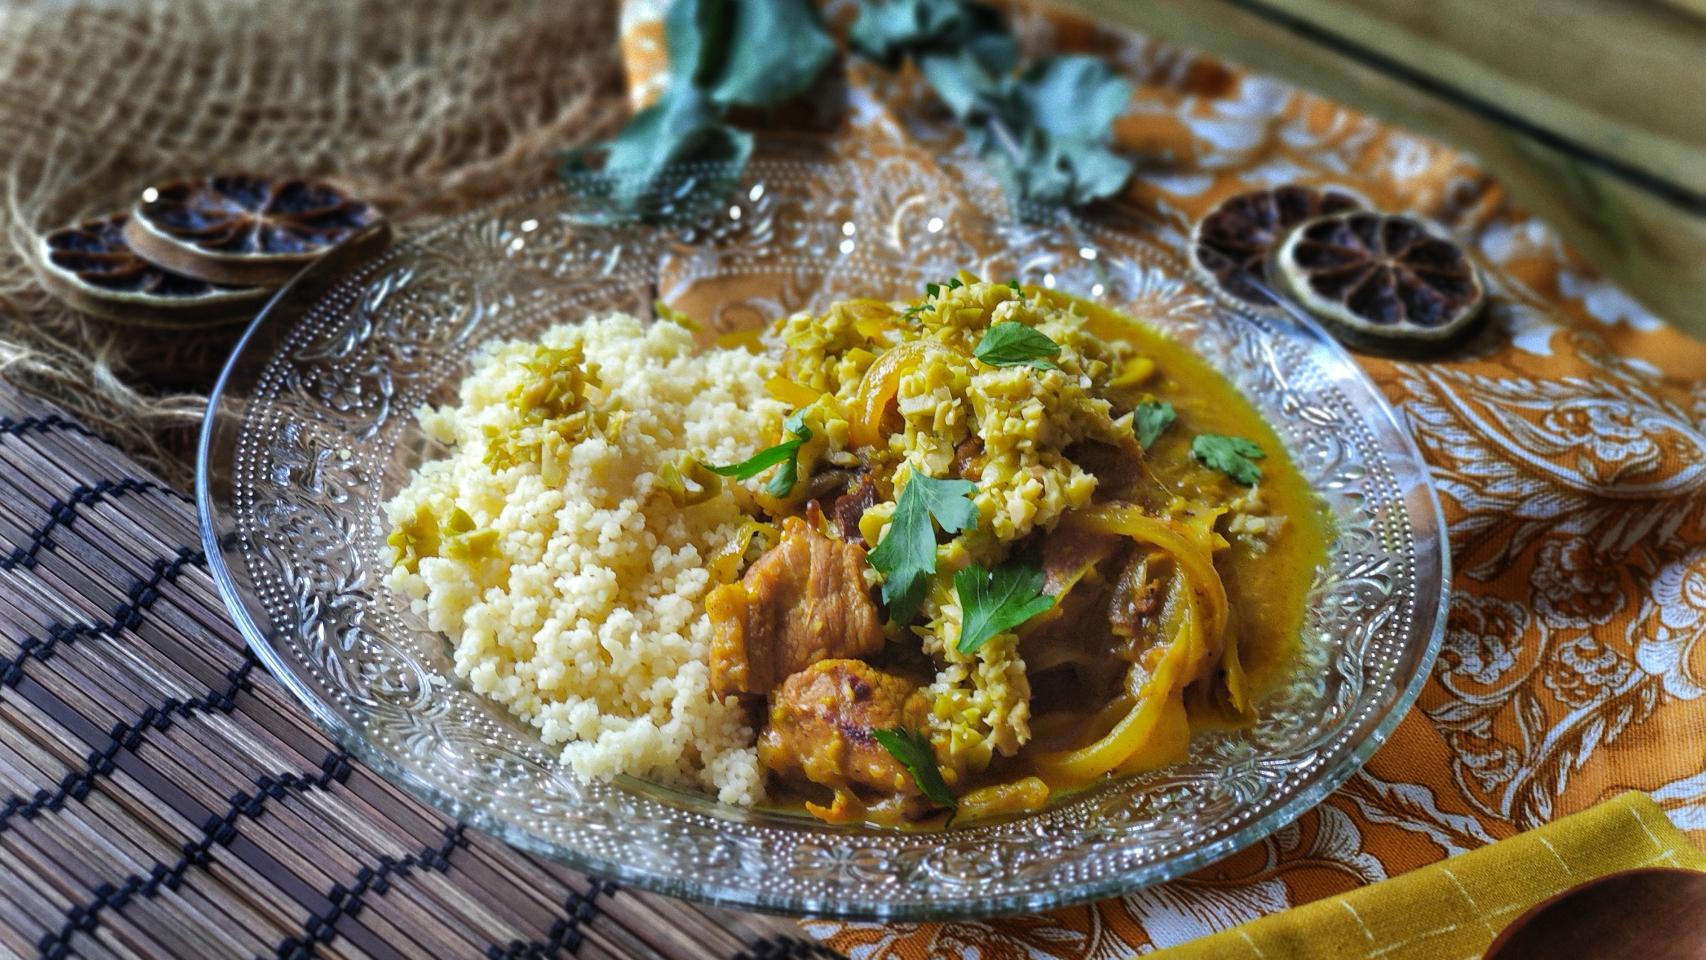 Receta de tajín de cordero marroquí - Cocina árabe